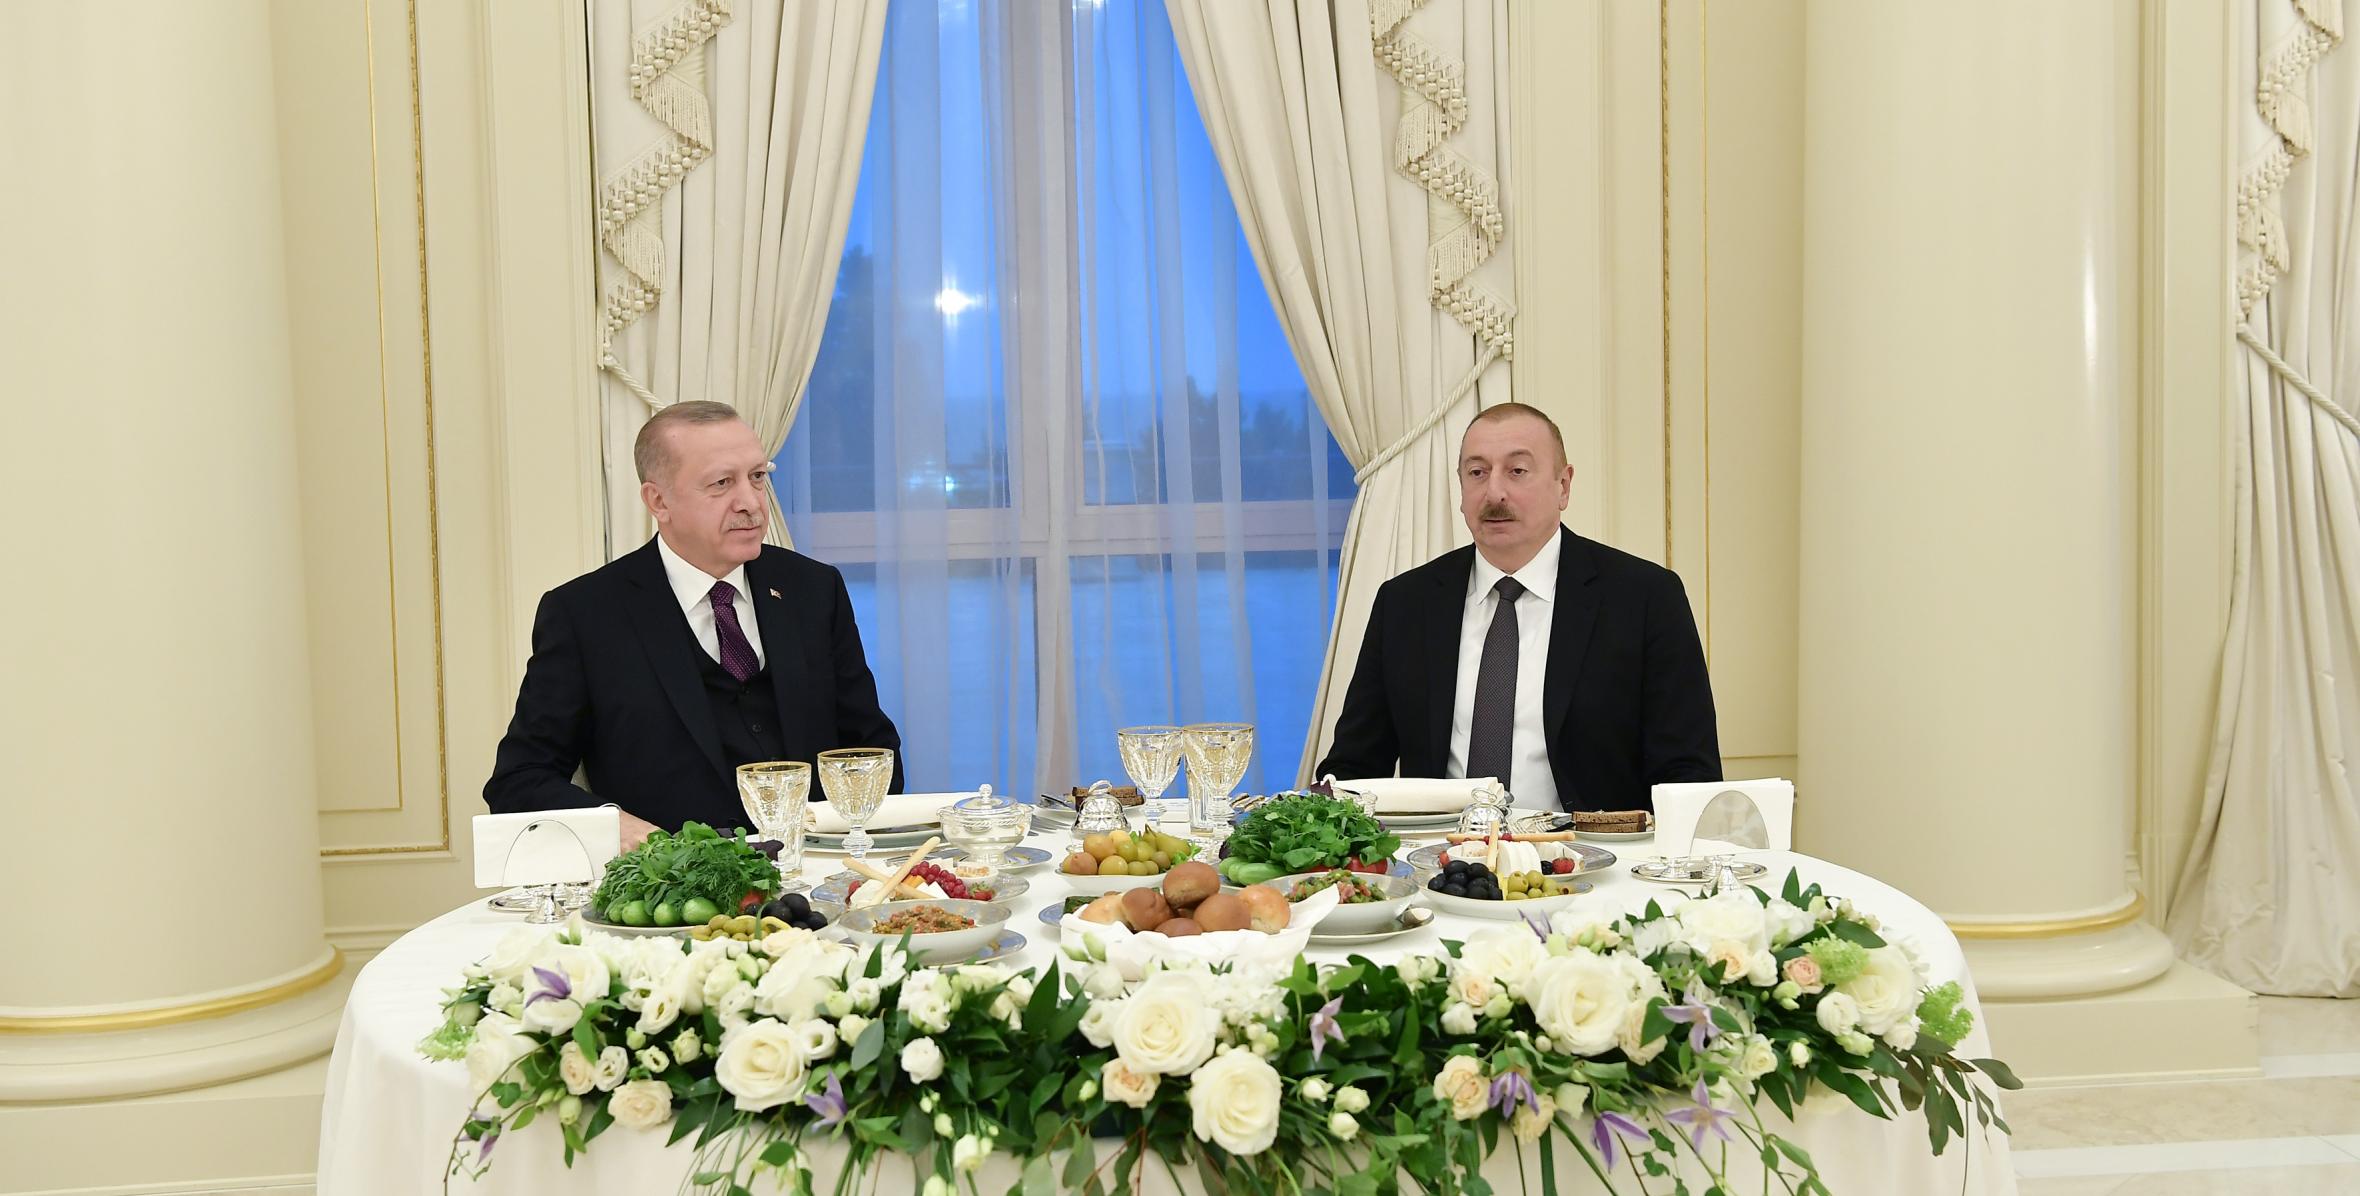 Ильхам Алиев дал прием в честь Президента Турецкой Республики Реджепа Тайипа Эрдогана